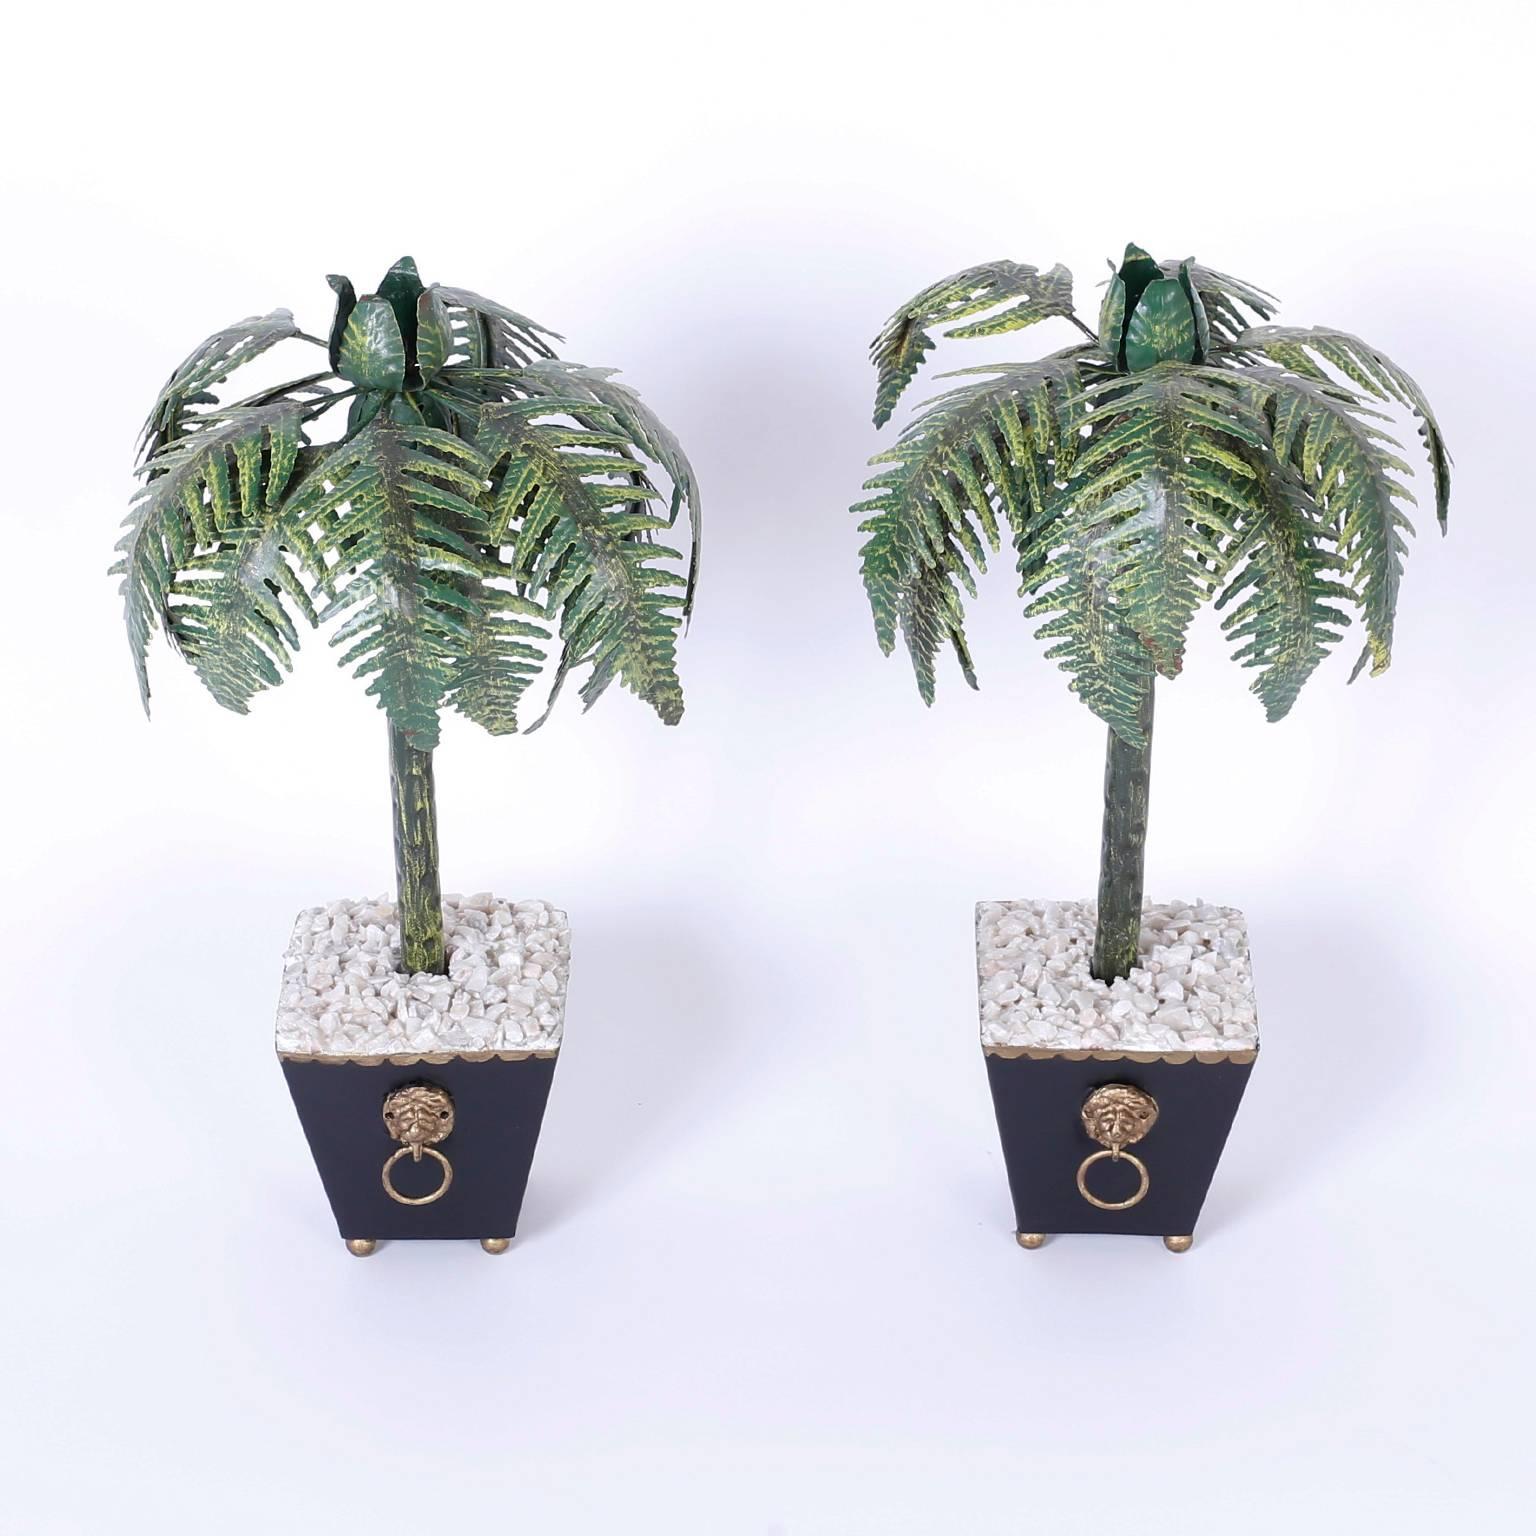 Ein Paar Palmenkerzenständer in klassischem Pflanzgefäß mit Löwenkopf-Ringgriffen, weißen Steinen und Kugelfüßen. Eine seltene große Größe für diese Form.